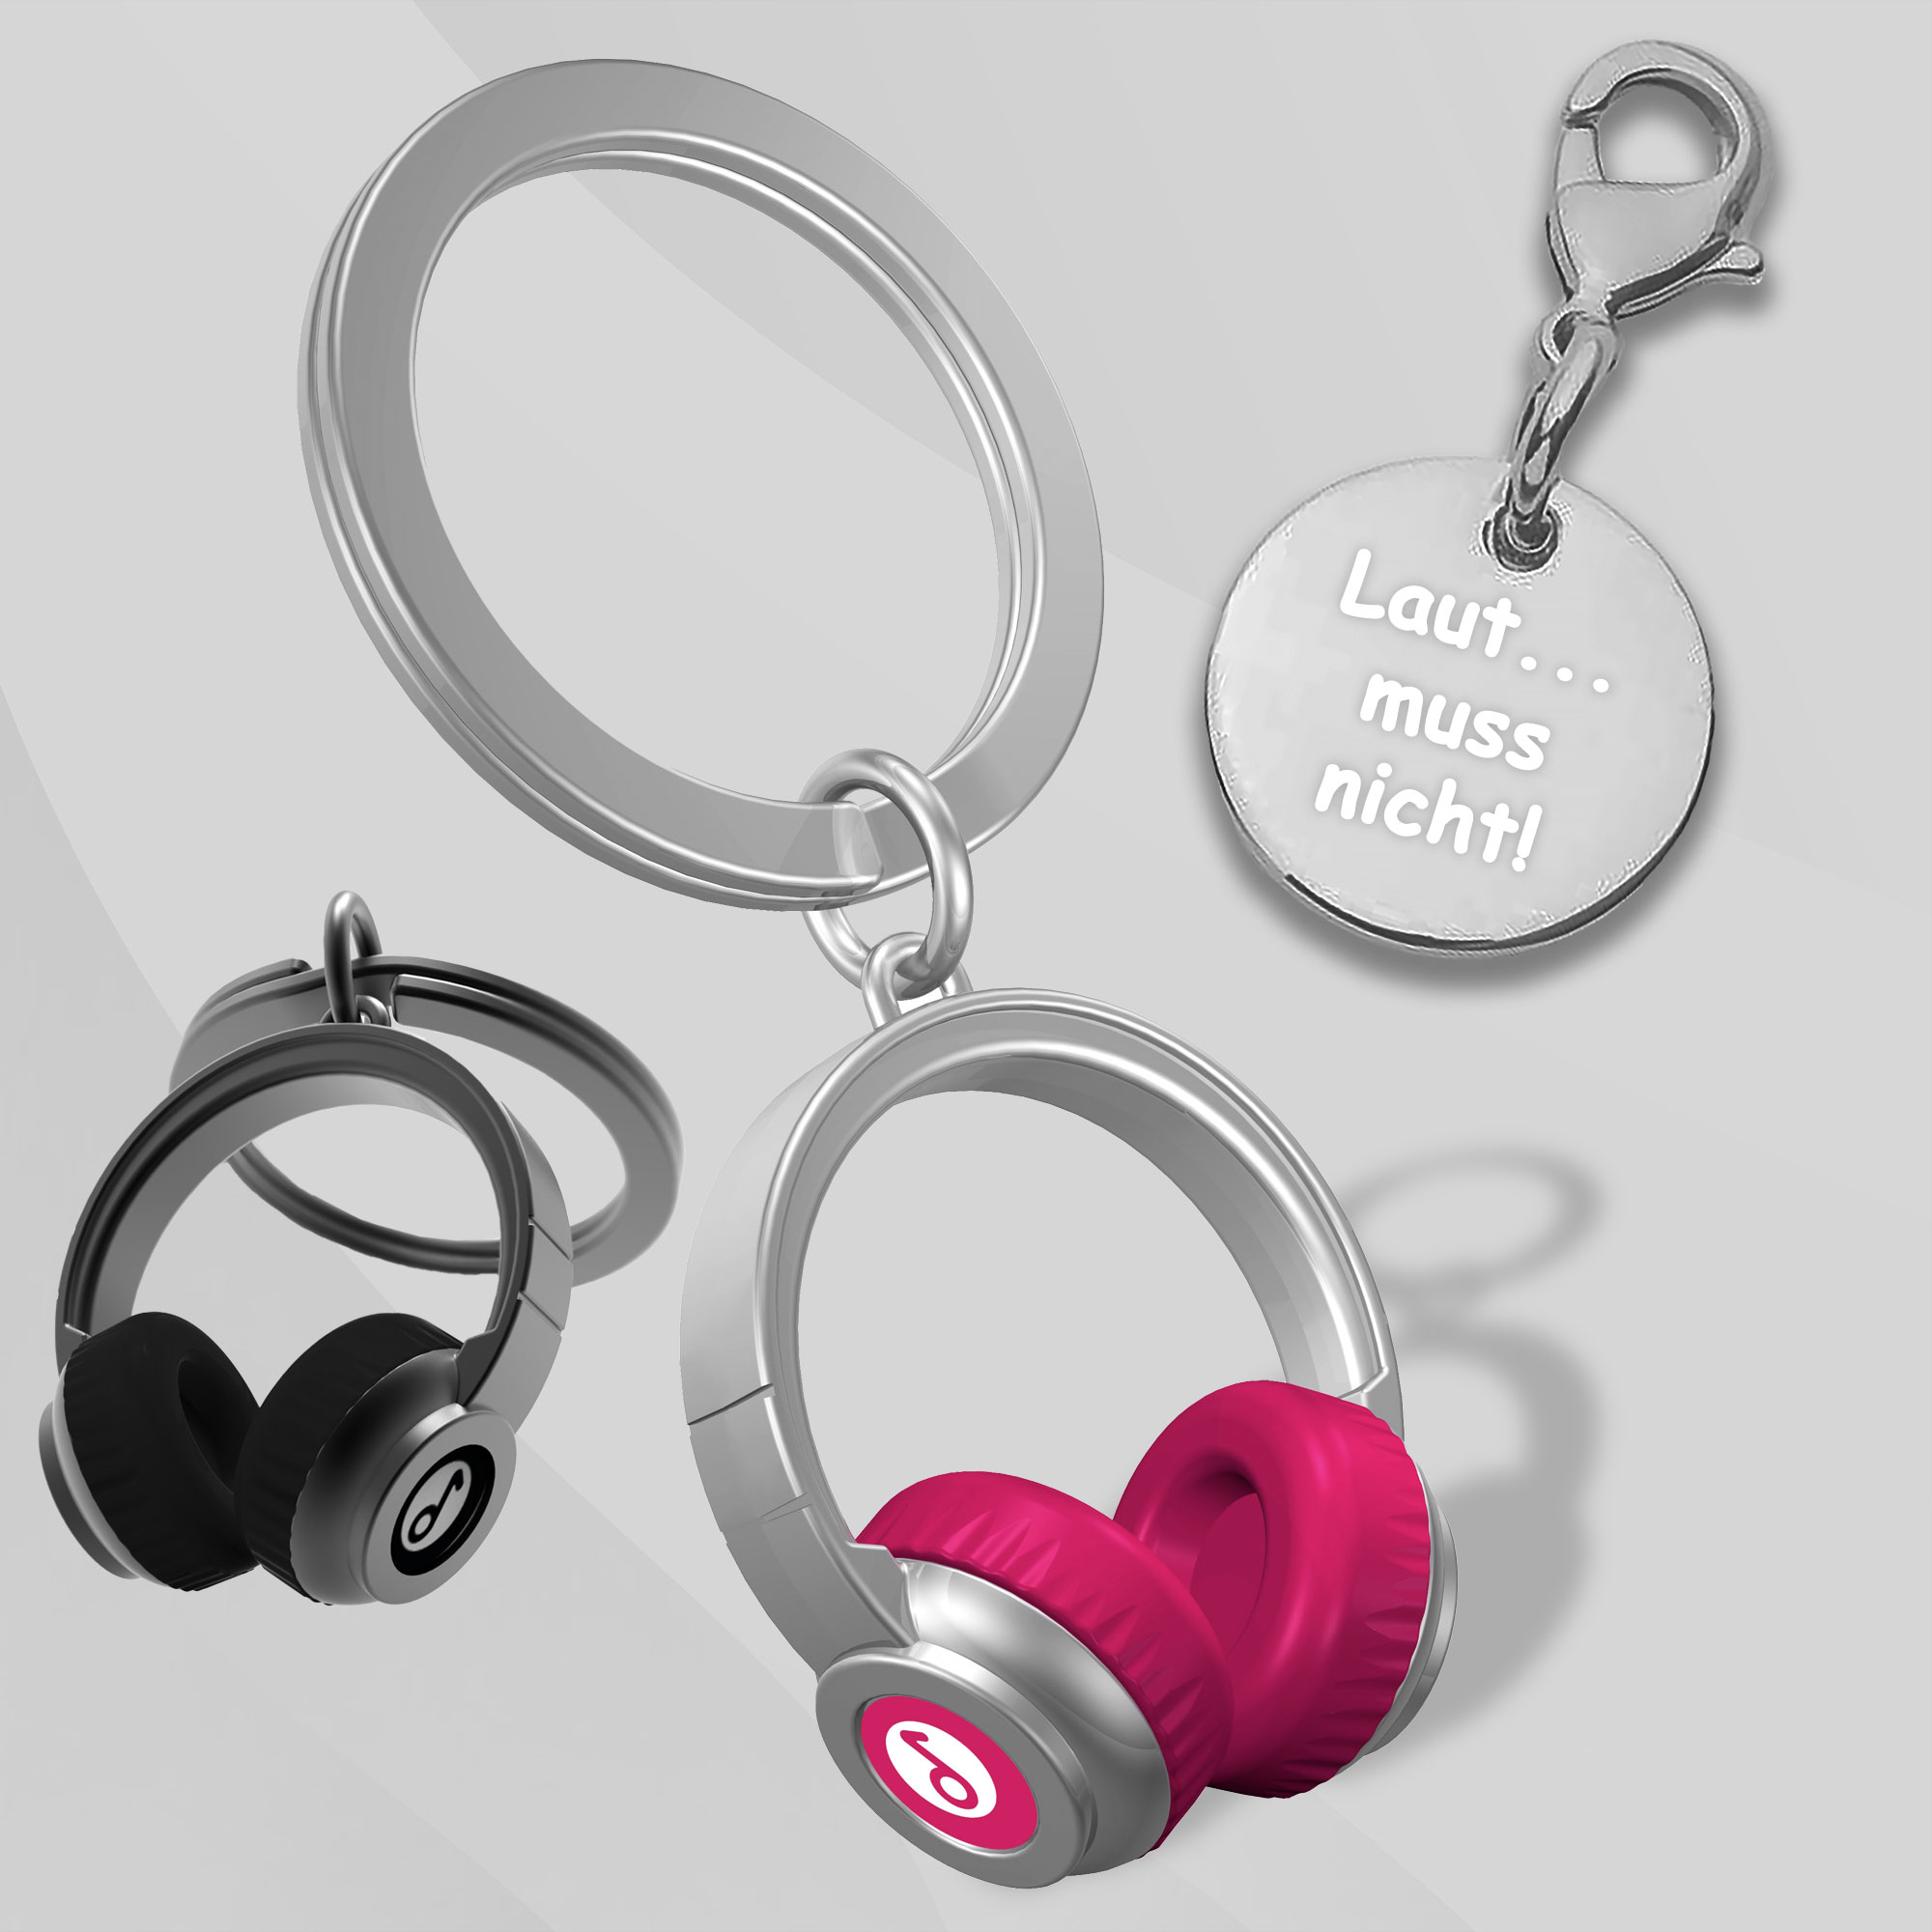 Kopfhörer Schlüsselanhänger in schwarz und pink mit Gravur